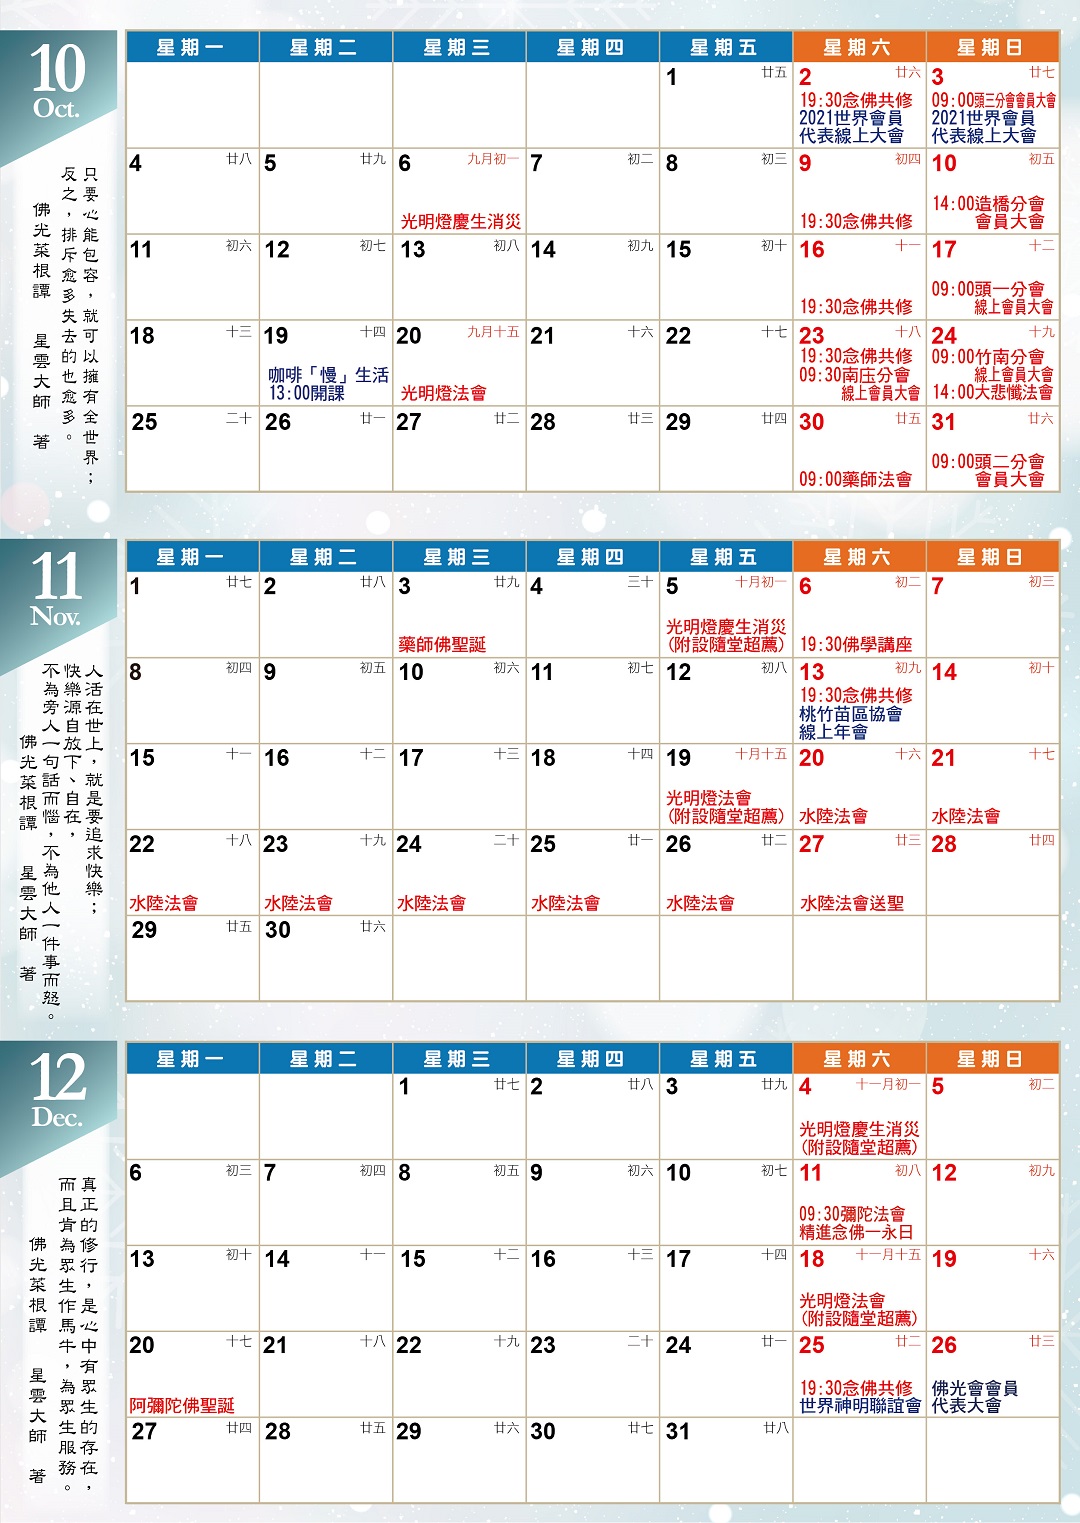 1100923-海報-亮明-宏法社-2021年10~12月行事曆-A4-150P銅版-3-02.jpg